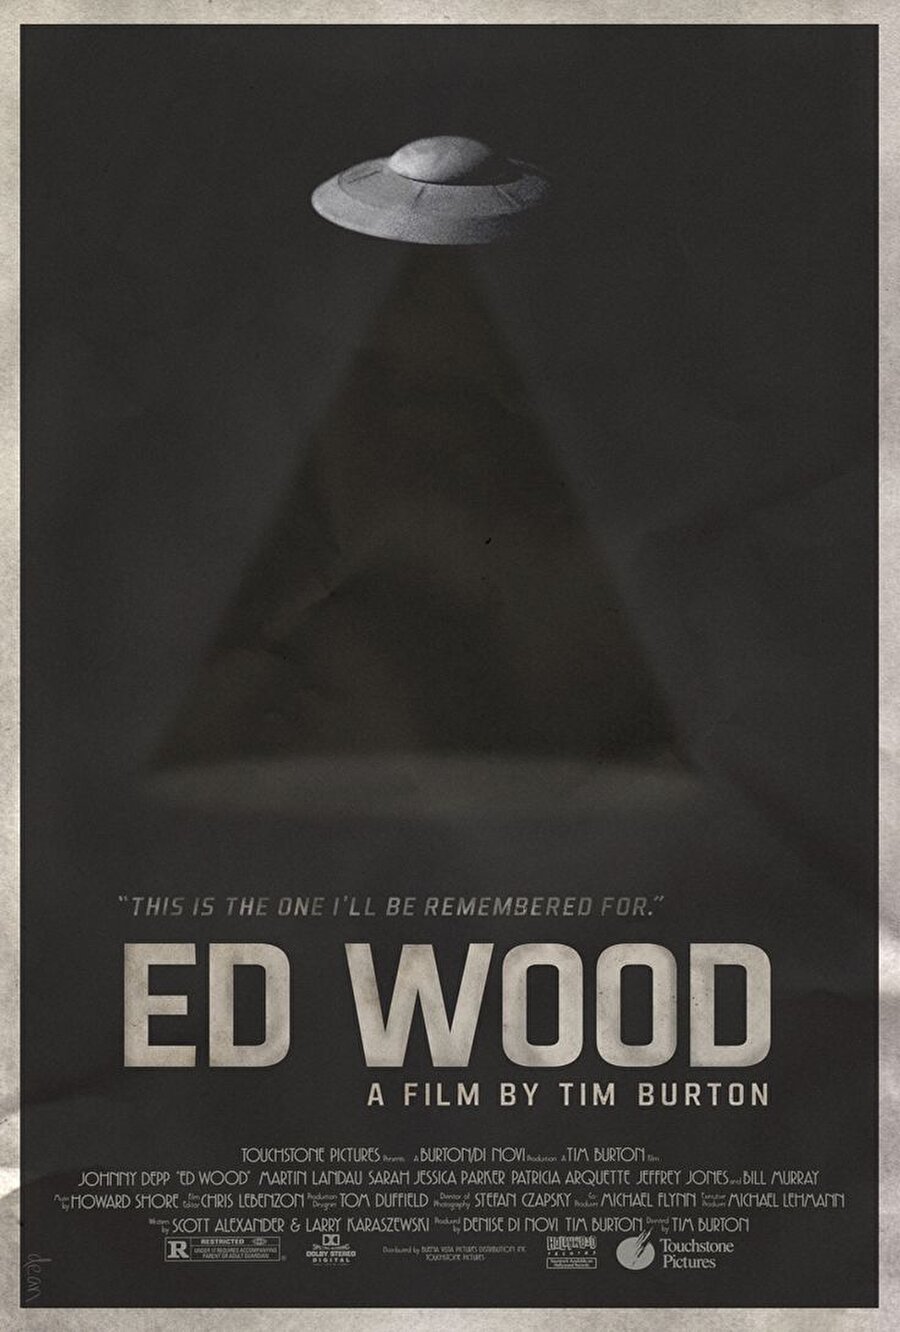 Ed Wood'u anlatan film 2 Oscar kazandı
1994 yılında Ed Wood'u anlatan bir film çekildi. Filmin başrolünü Johnny Depp oynarken yönetmenliğini de Tim Burton yaptı. Bu film tam iki dalda Oscar ödülünün sahibi oldu. Dünyanın en kötü yönetmenini anlatan filmin iki Oscarla ödüllendirilmesine hayatın bir cilvesi diyebilir miyiz mi ne dersiniz?
 
